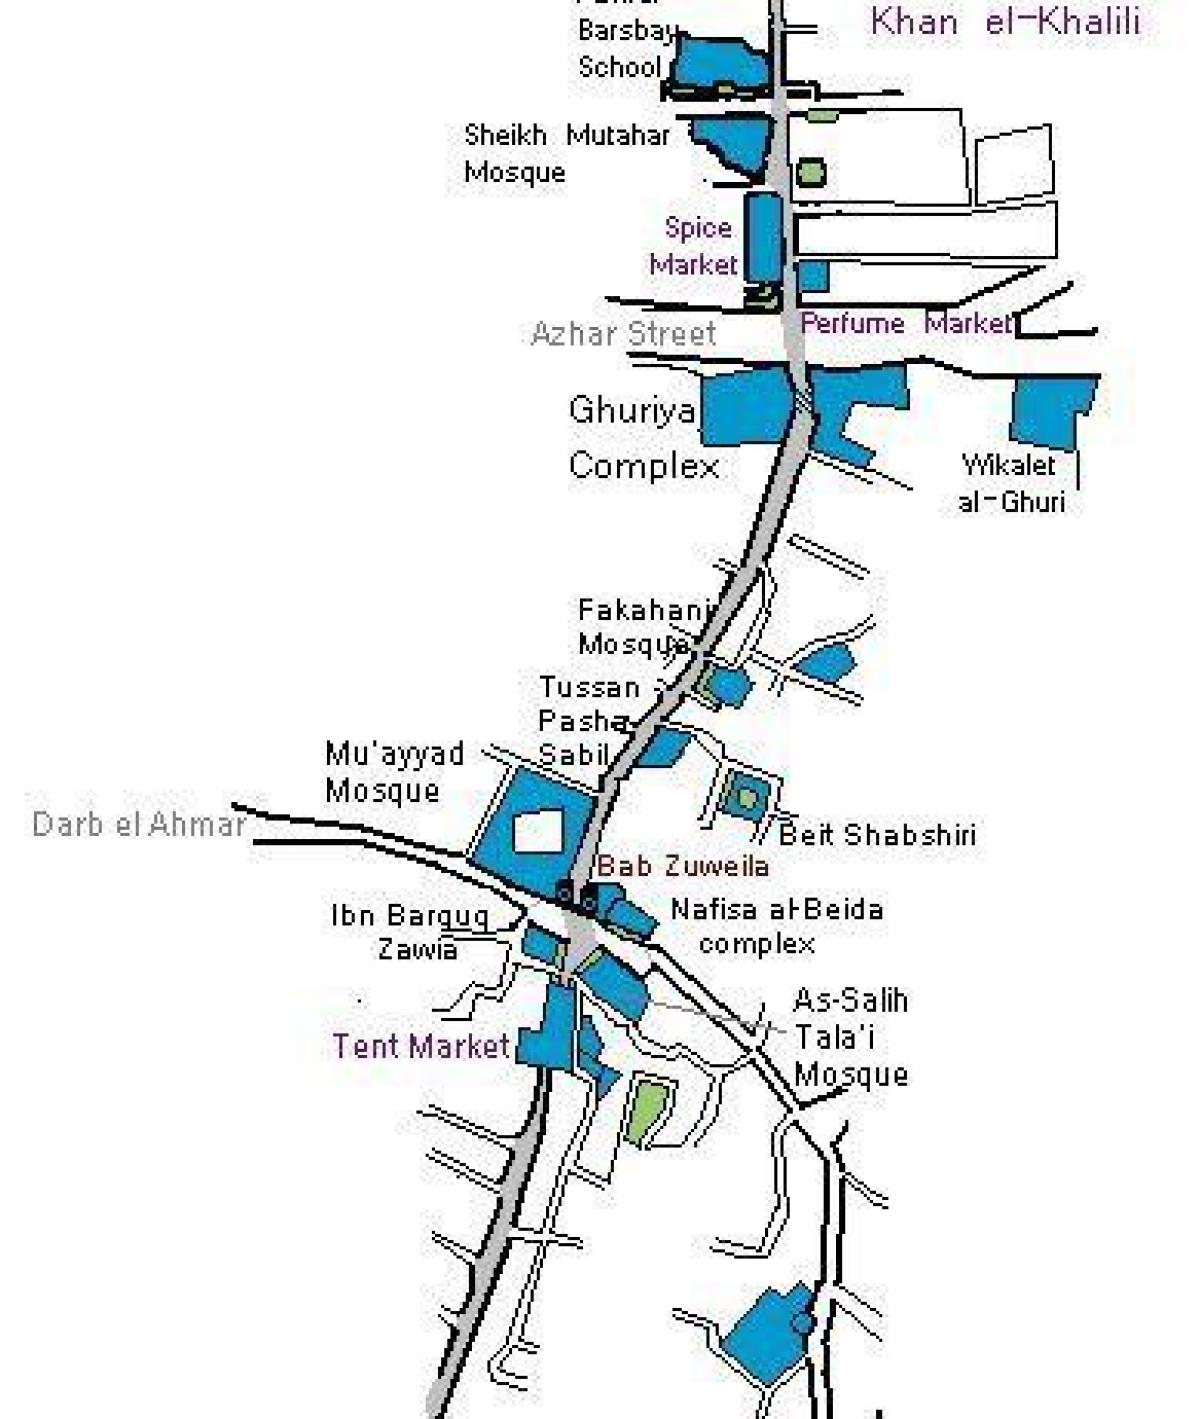 خان ال خلیلی بازار نقشه